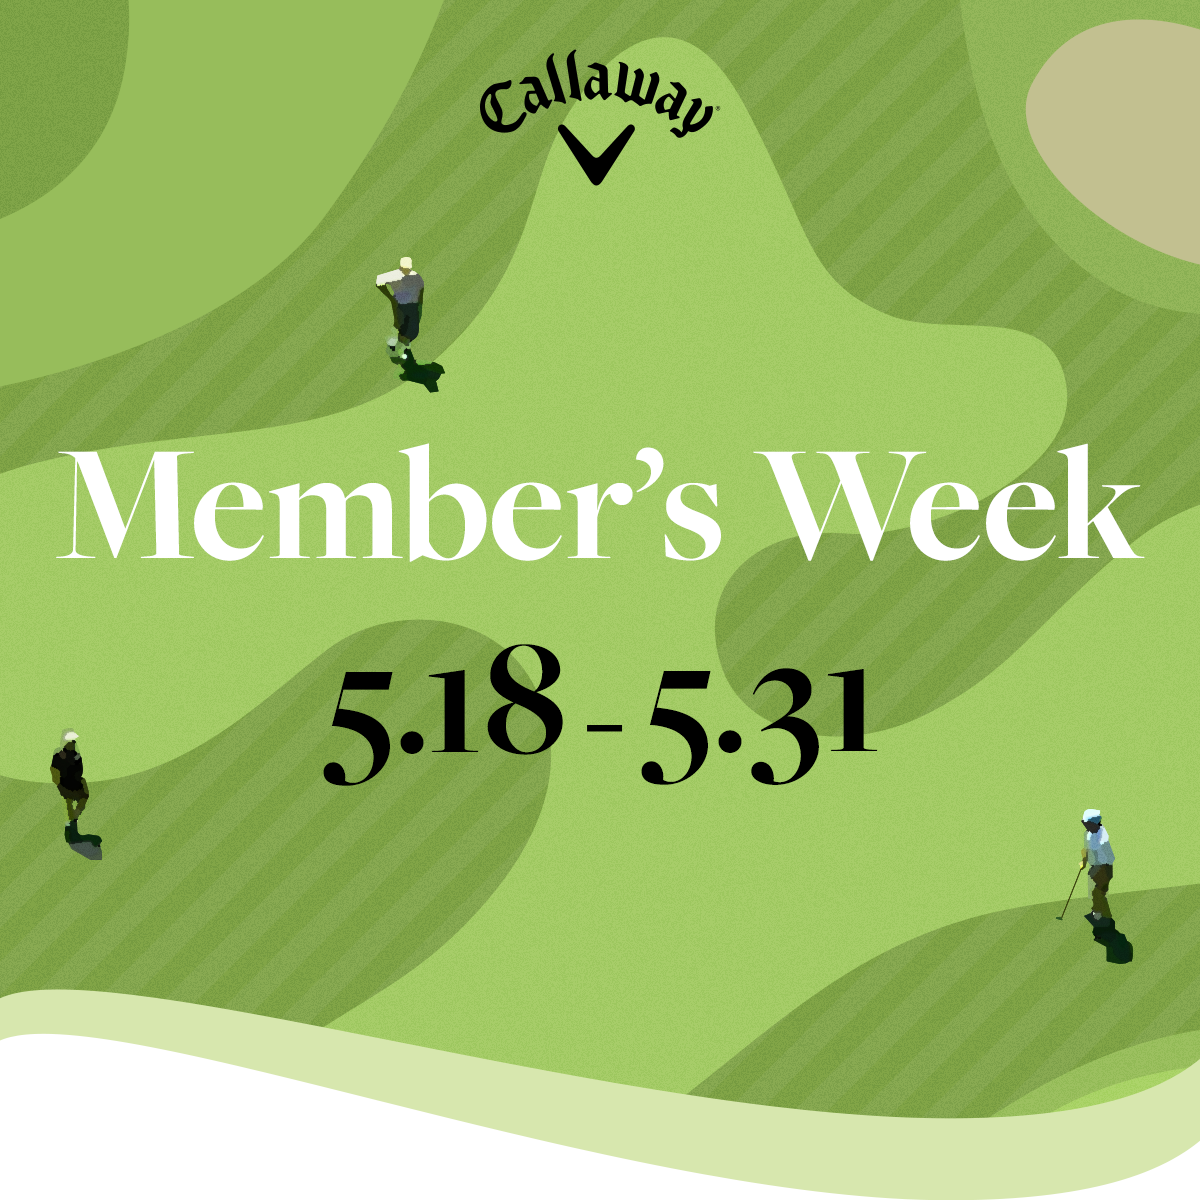 Member's Week